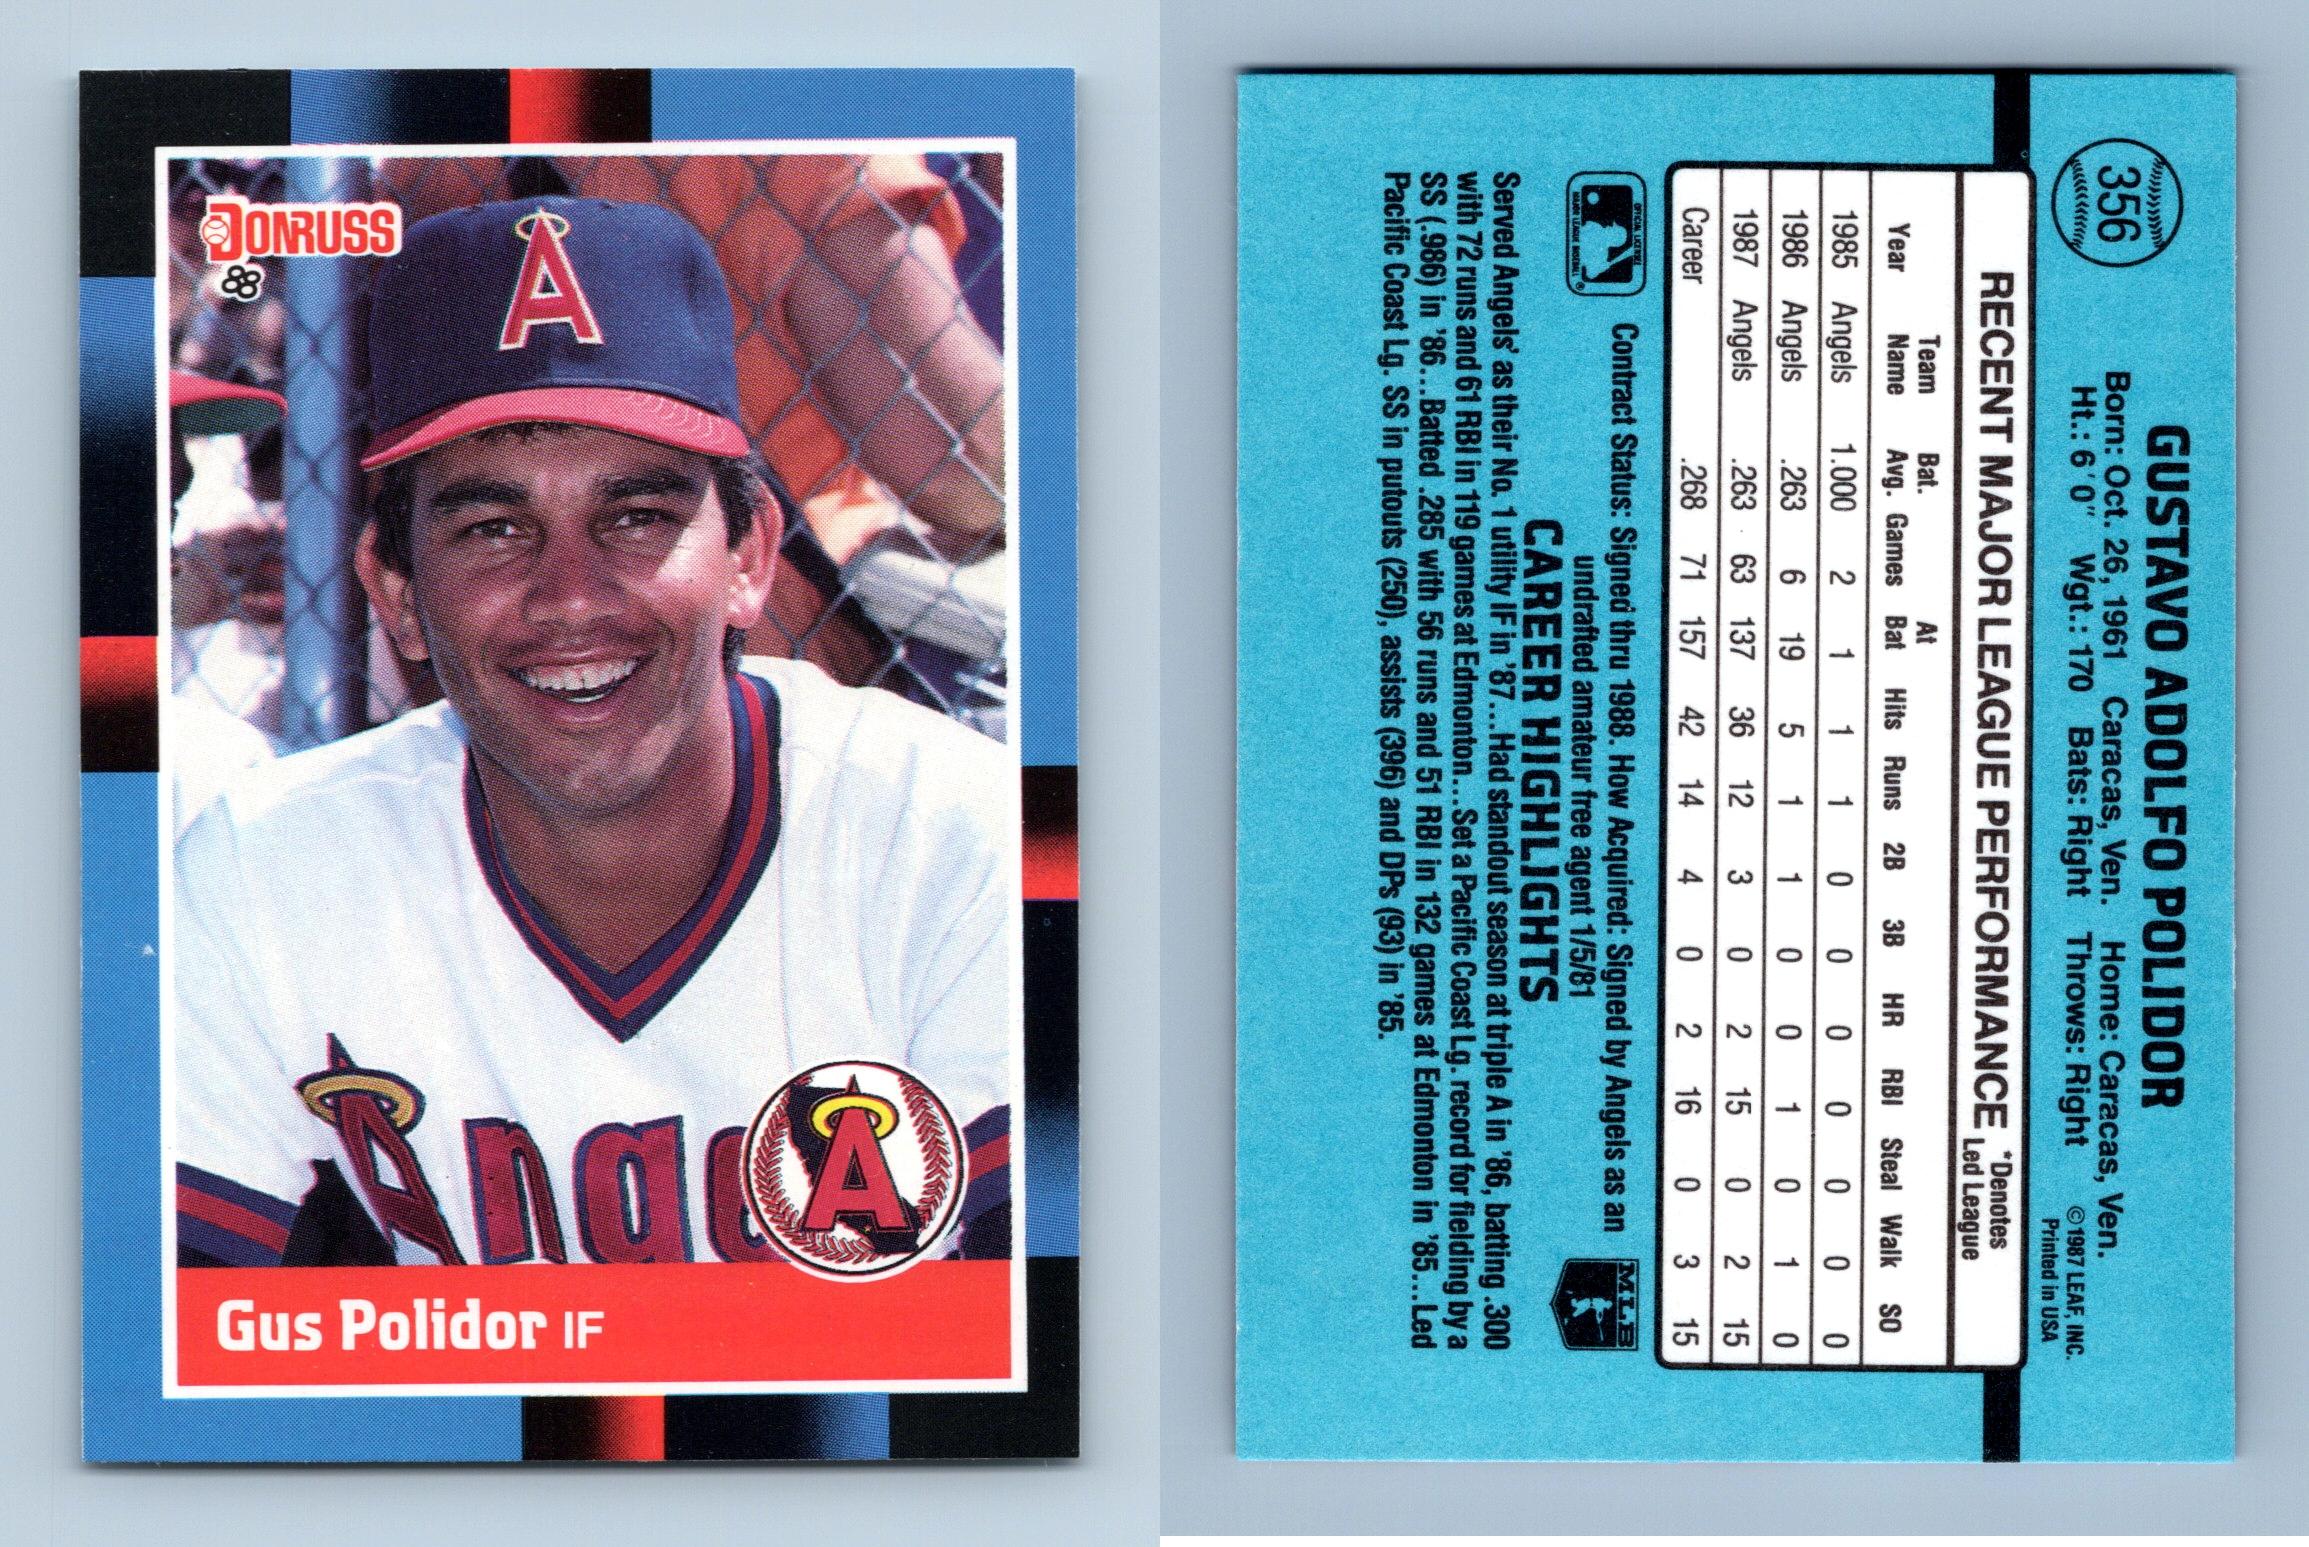 Bill Buckner - Angels #456 Donruss 1988 Baseball Trading Card